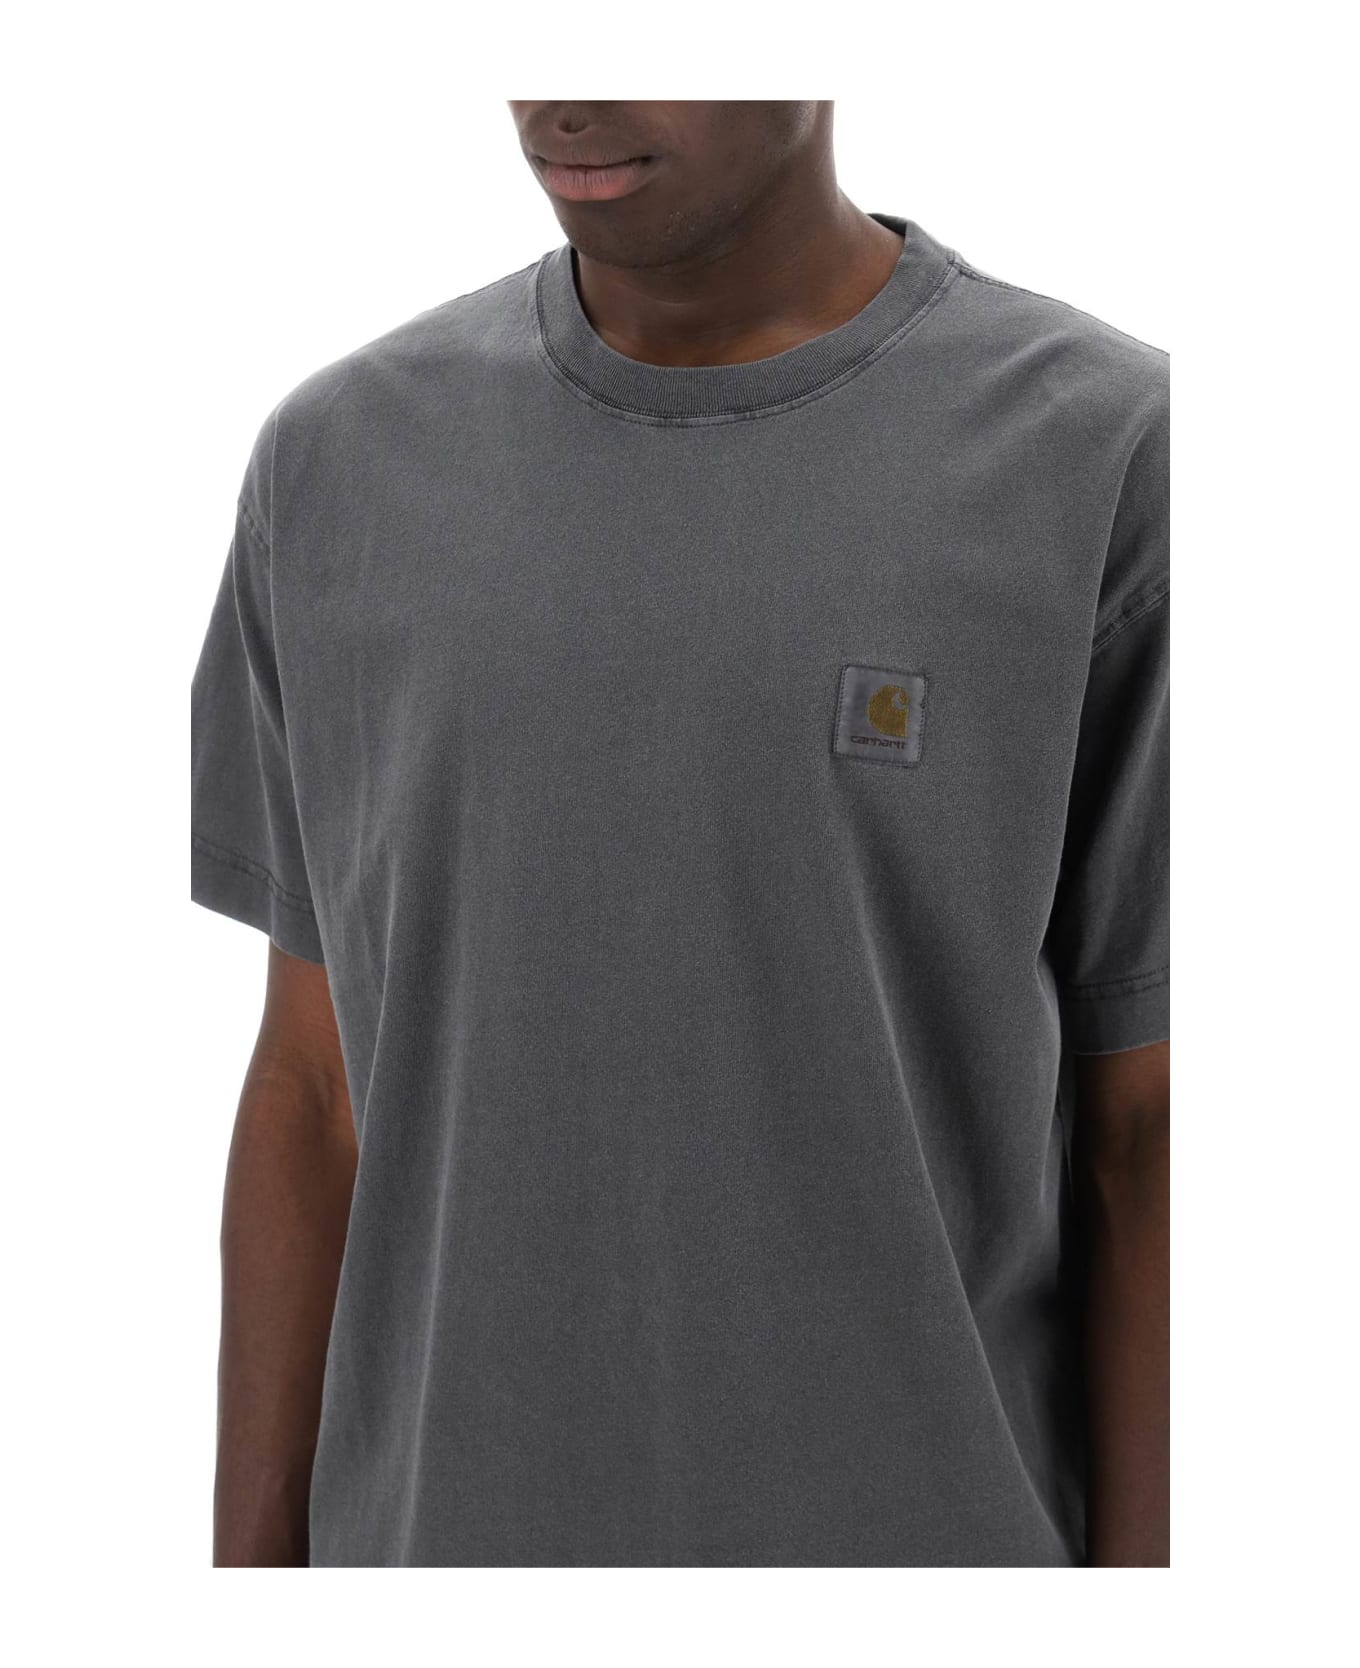 Carhartt Nelson T-shirt - Gd Chacoal Garment Dyed